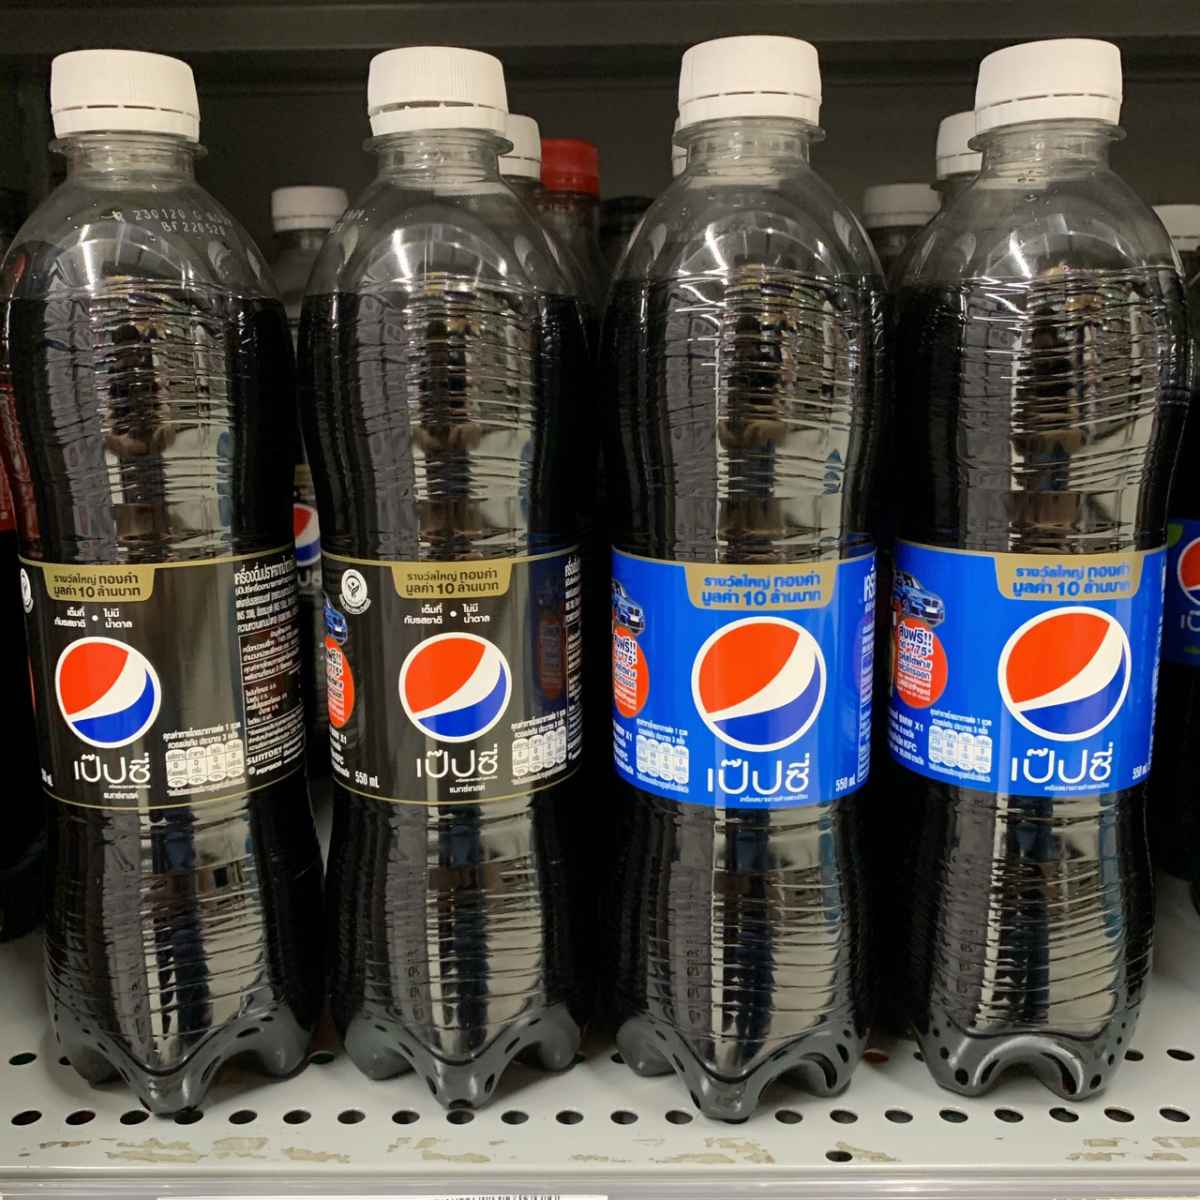 Pepsi2